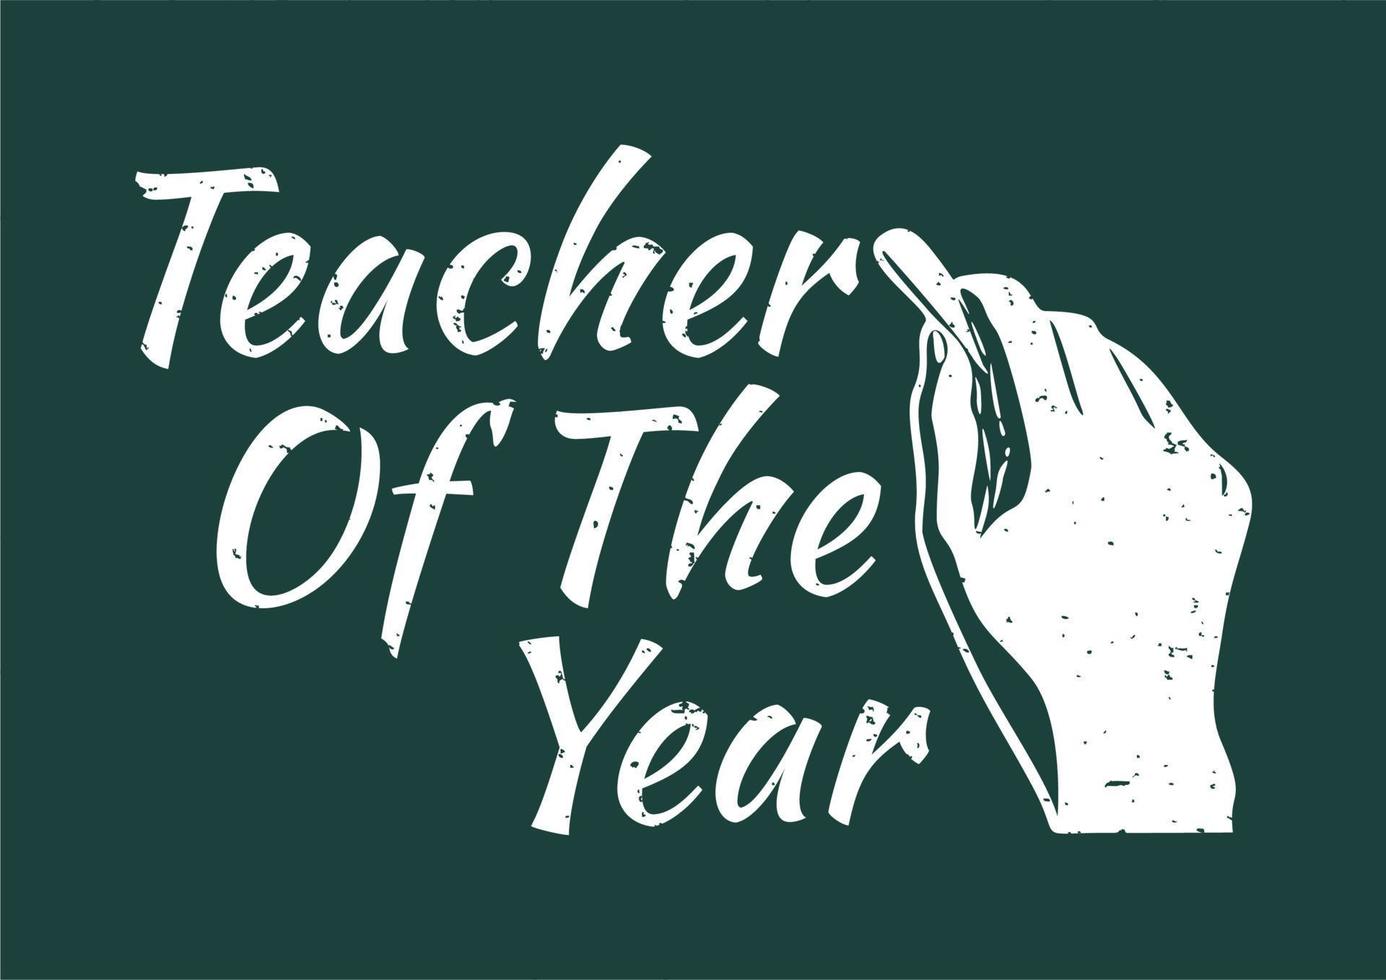 Årets lärare för t-shirtdesign med handen som håller en krita och vintageillustration för grön bakgrund vektor